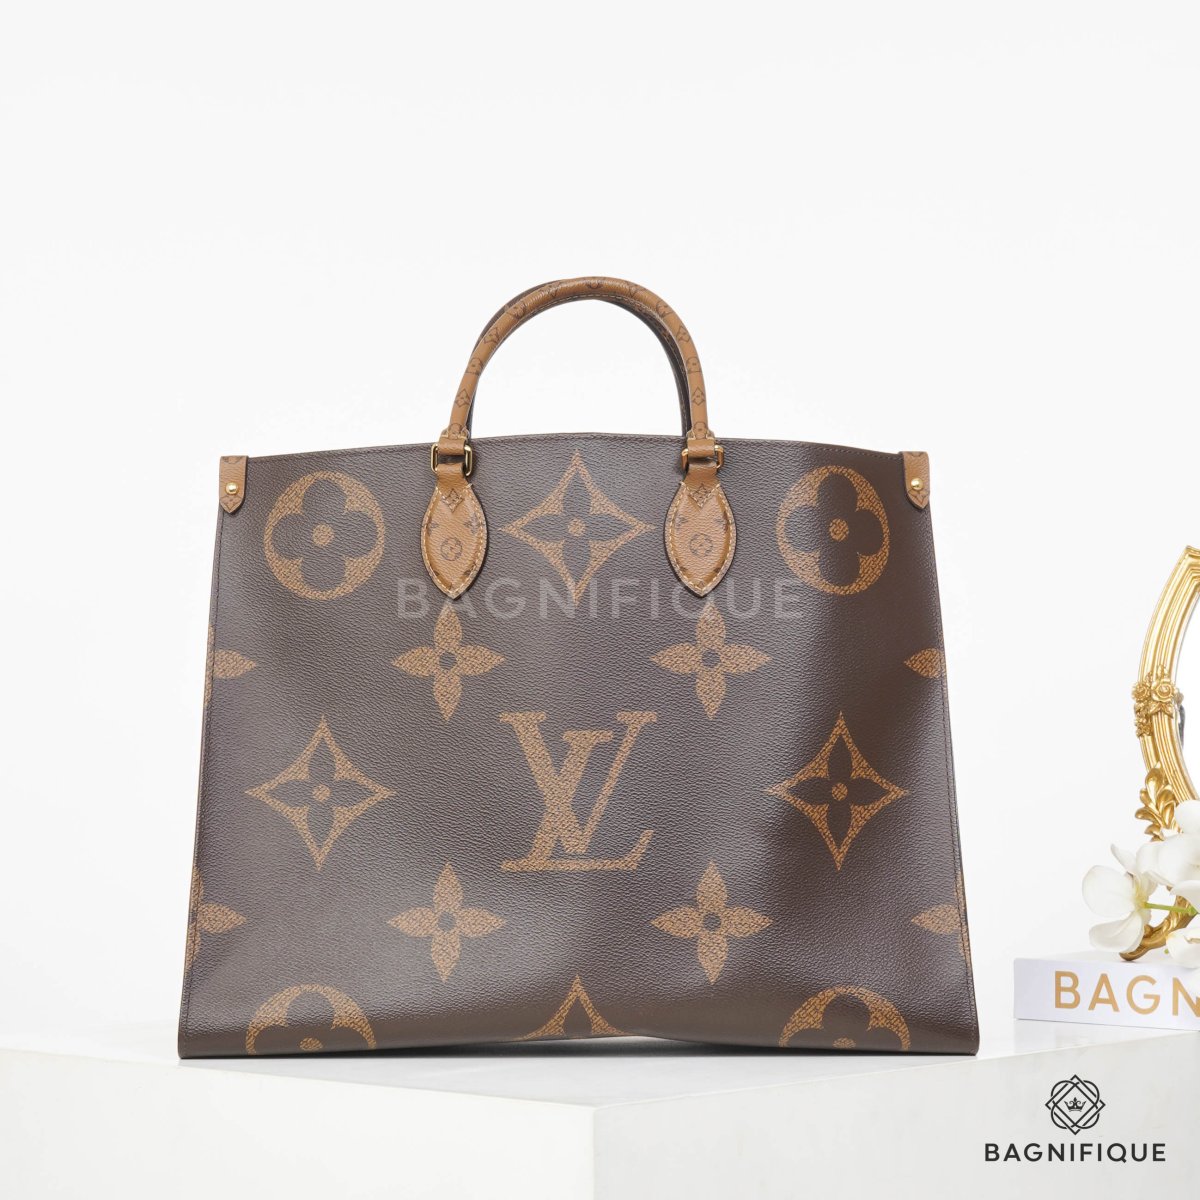 Nhẫn LV (Louis Vuitton) giá bao nhiêu, mua ở đâu, mẫu nào đẹp?